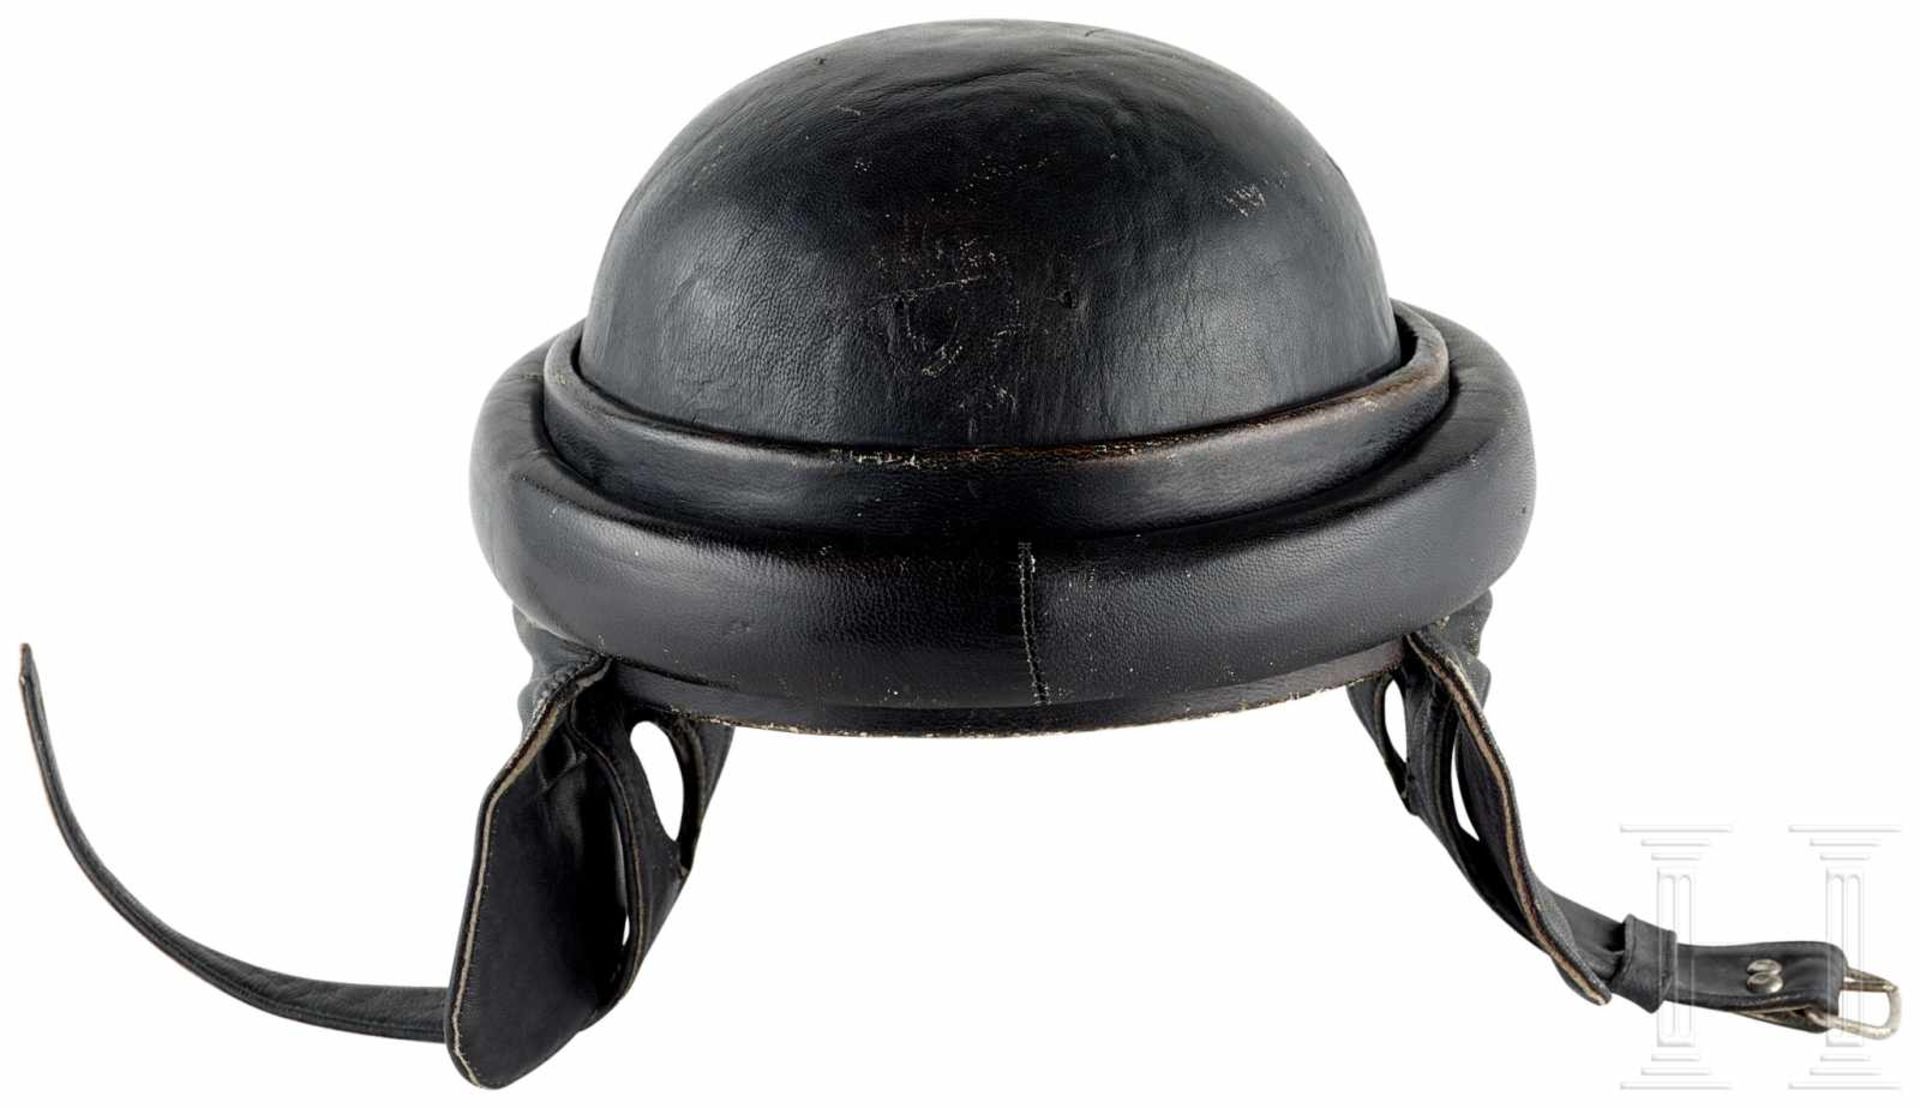 zurückgezogen / withdrawn---Helm für motorisierte Einheiten (Panzer/Motorrad), Deutschland, 1930er